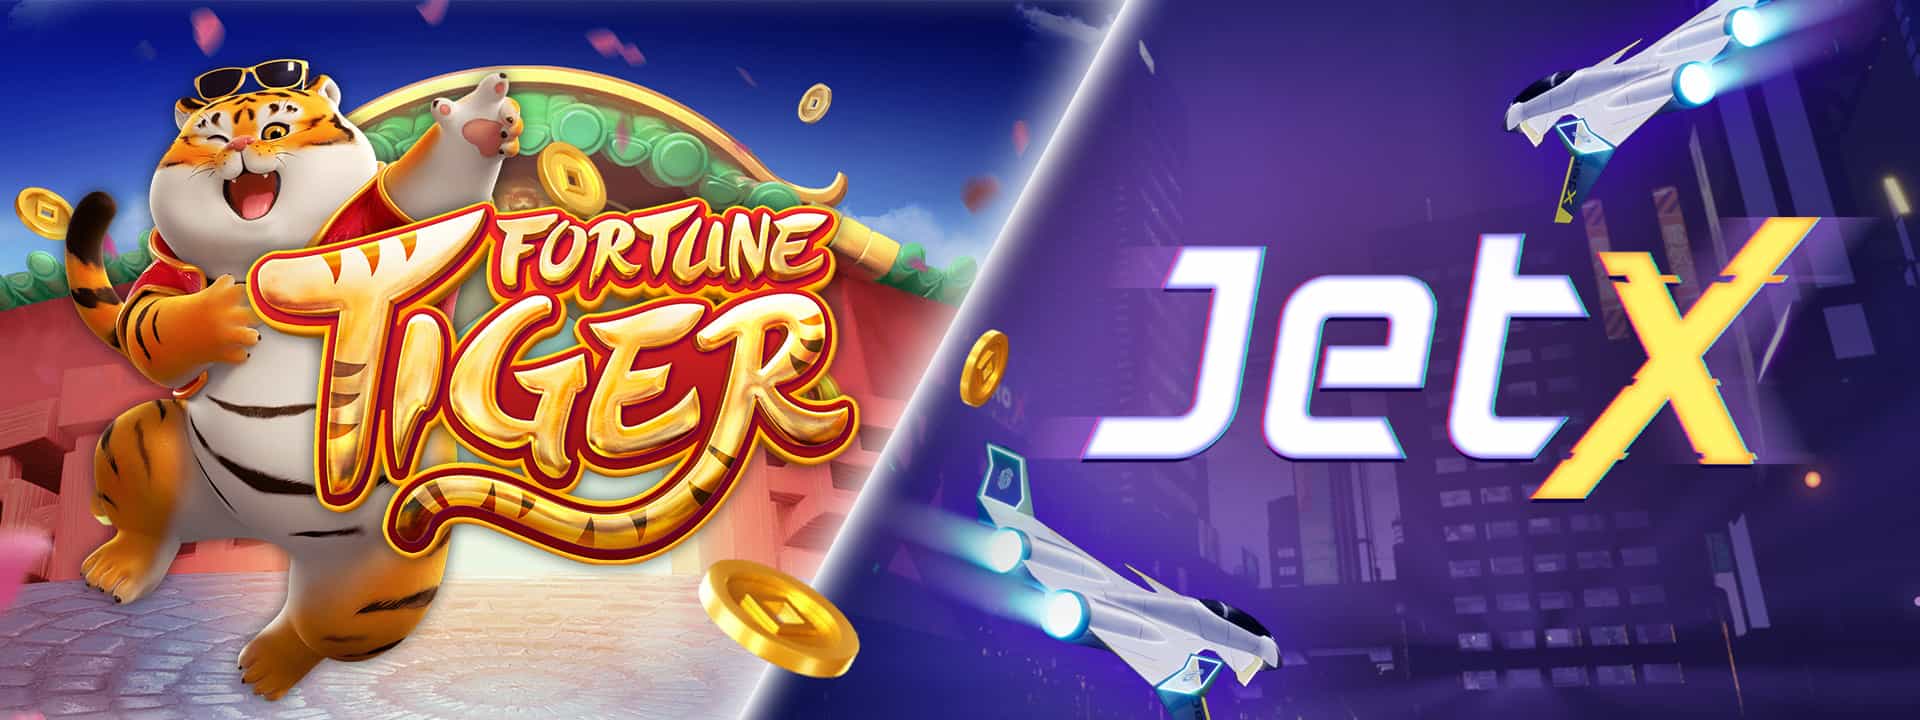 Fortune Tiger: melhores horários para ganhar nos jogos online – Portal  Canaã